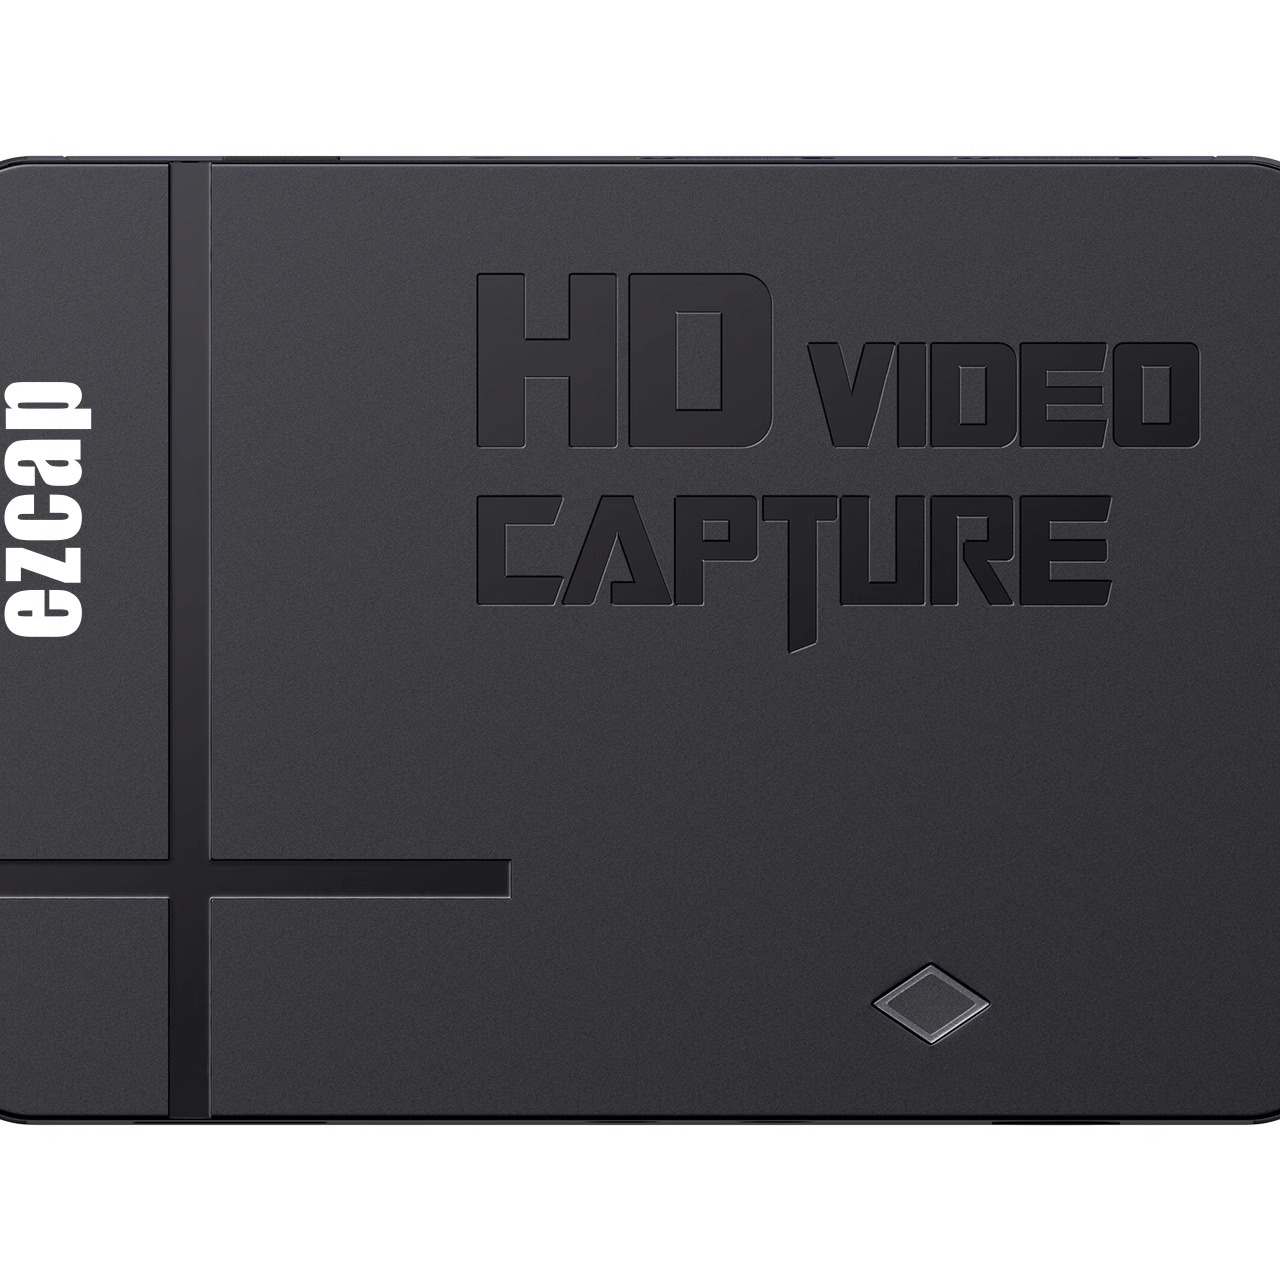 ezcap288 HDMI AV 1080P高清和模拟视频录制盒独立录制无需电脑